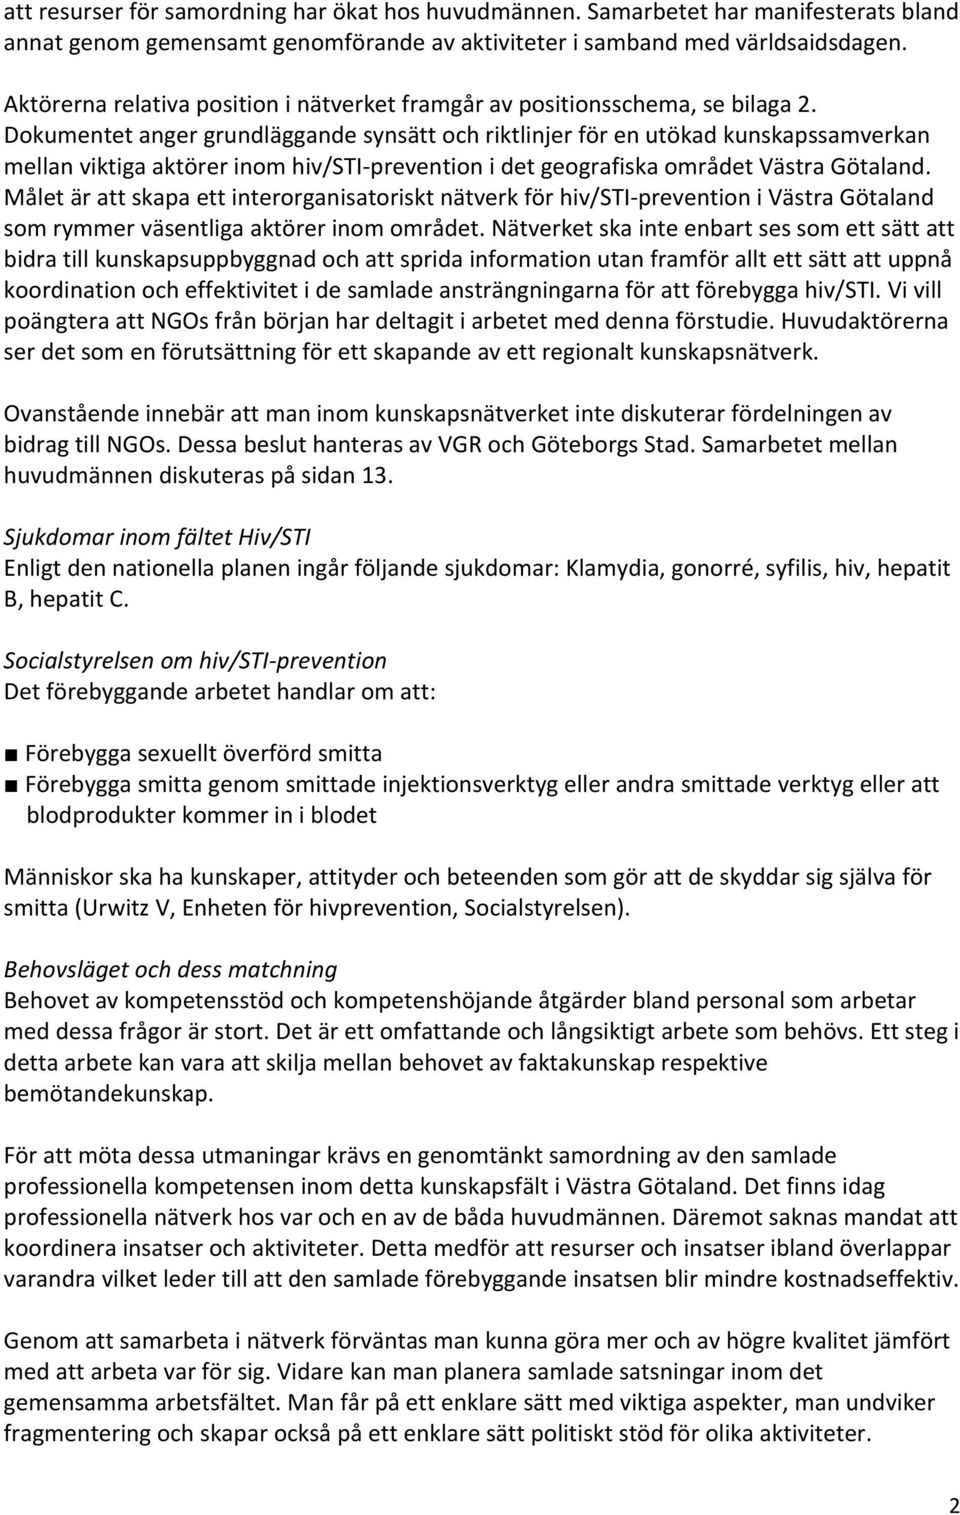 Dokumentet anger grundläggande synsätt och riktlinjer för en utökad kunskapssamverkan mellan viktiga aktörer inom hiv/sti prevention i det geografiska området Västra Götaland.